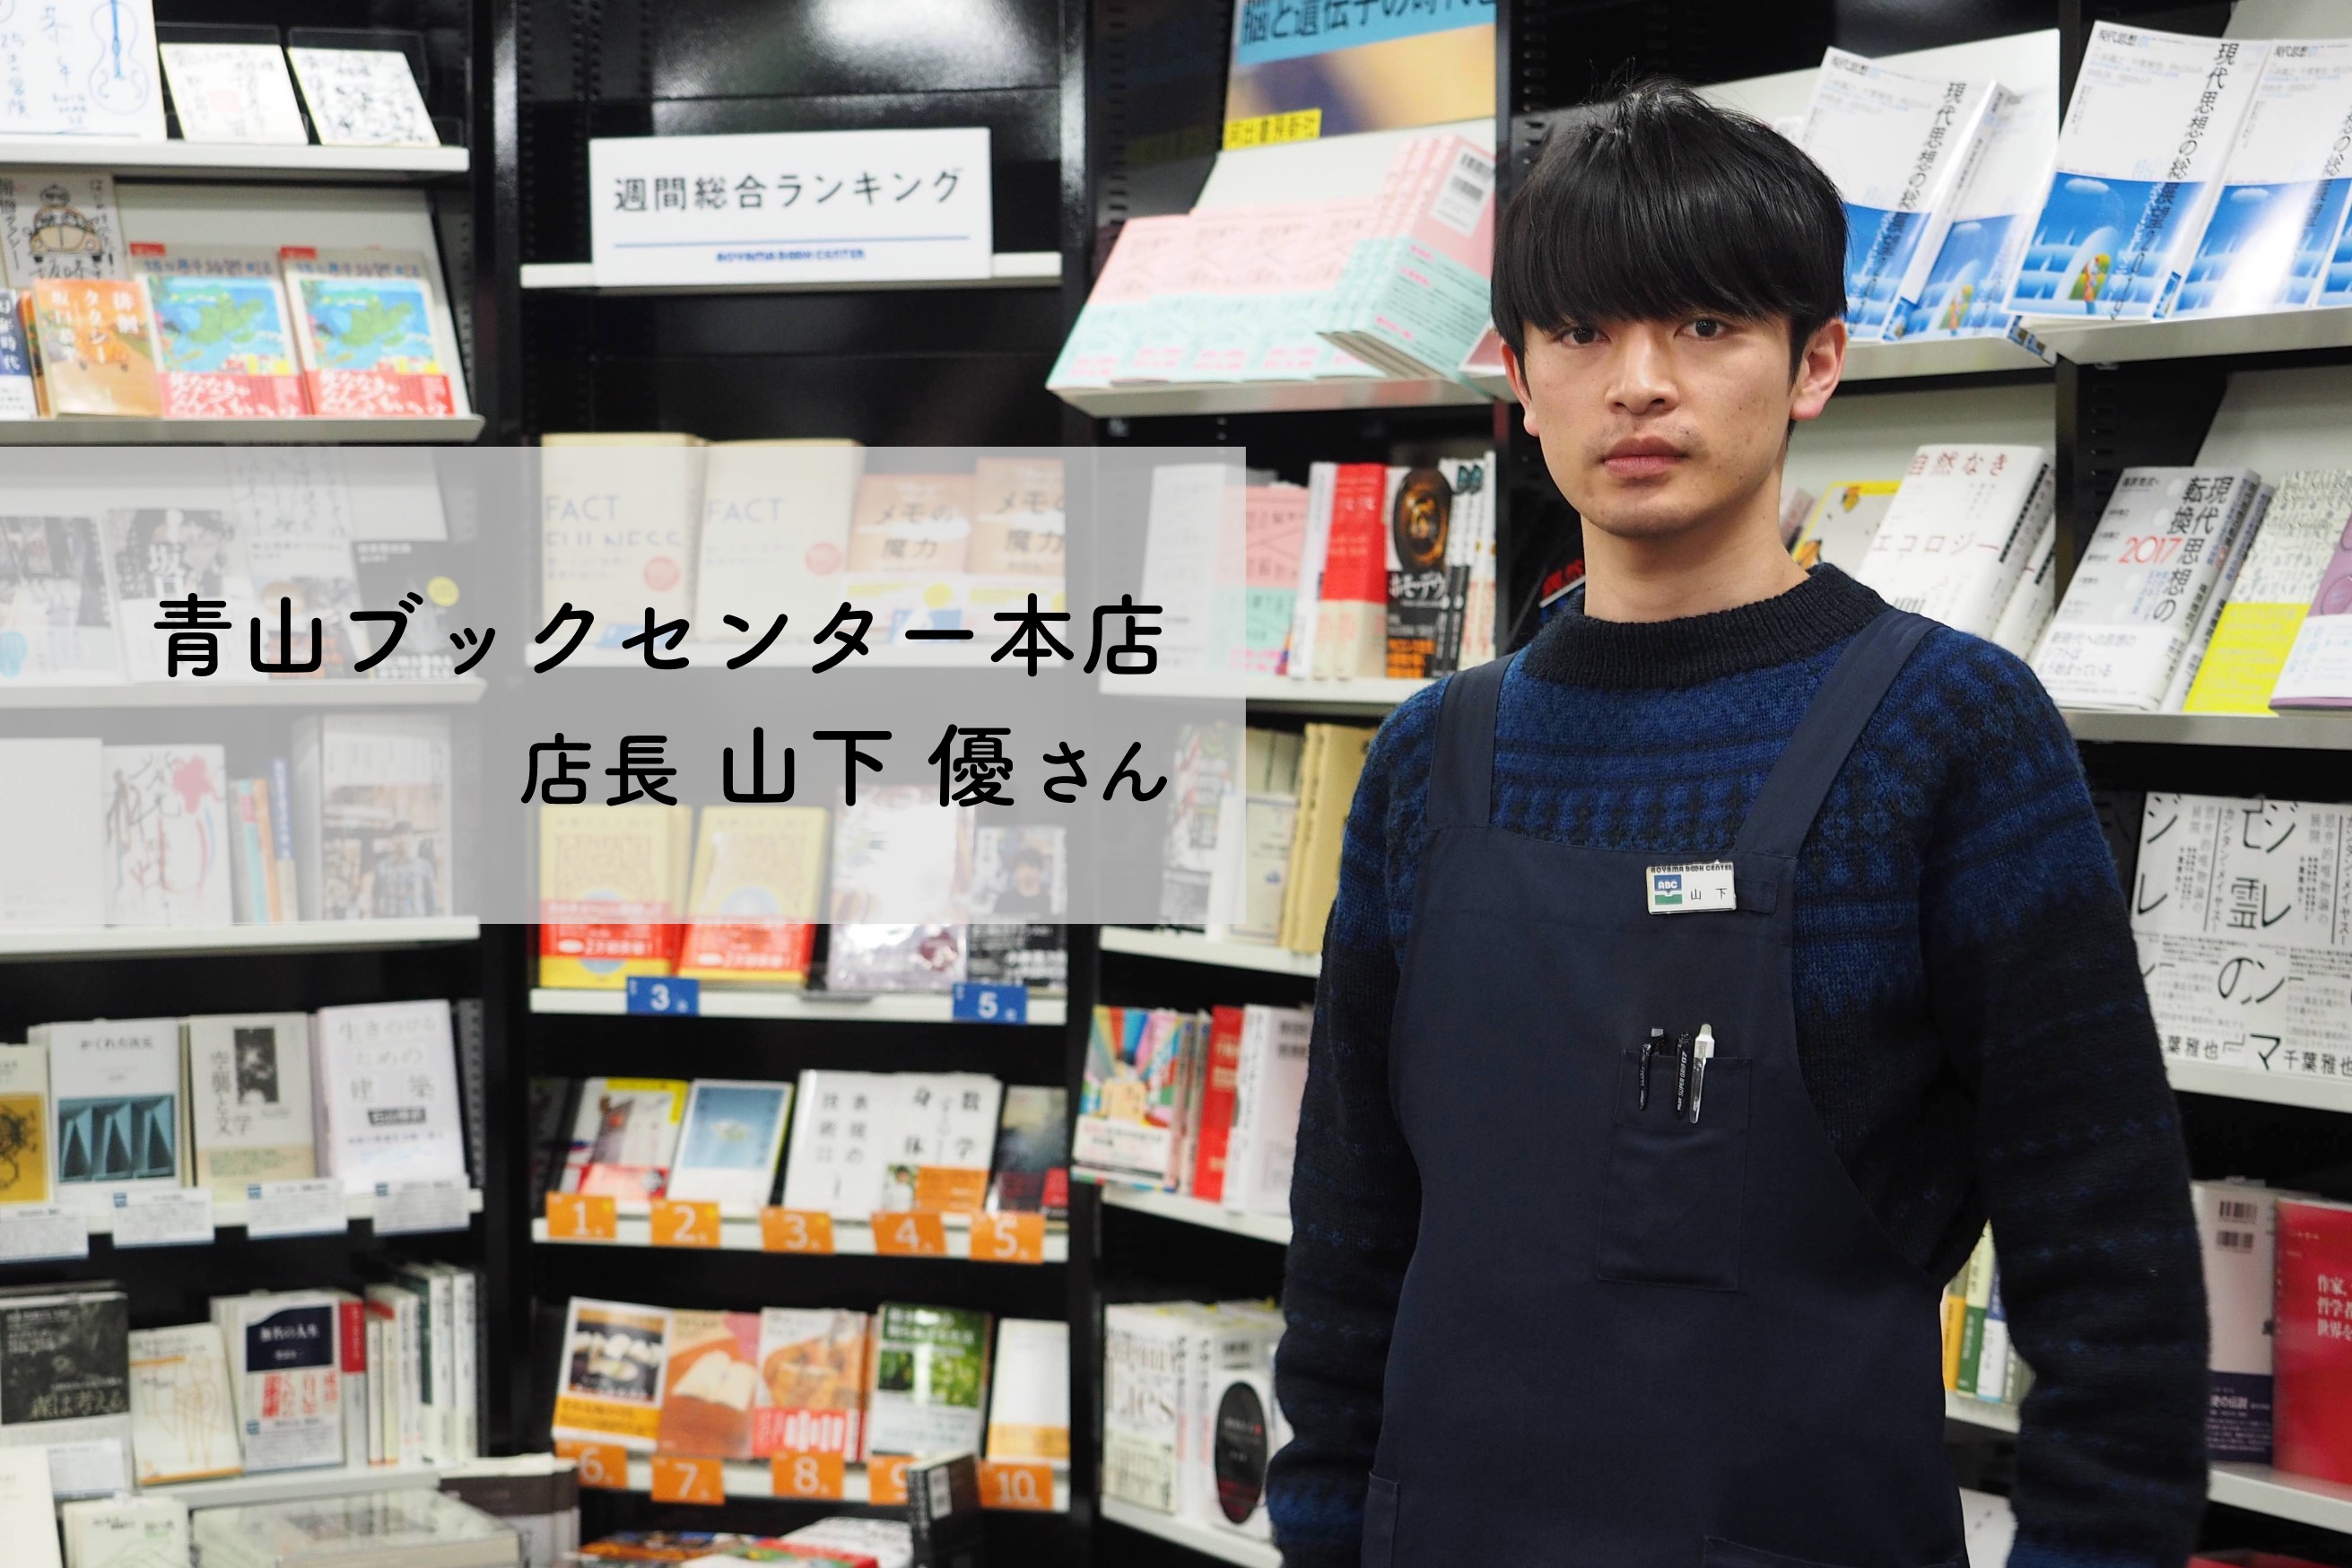 아오야마 북센터 본점에서만 10년, 야마시타 유 점장은 도쿄 서점계의 이케멘으로도 불려요. 요즘 작은 책방들을 보면 점장도 캐릭터가 될 필요가 있달까요.